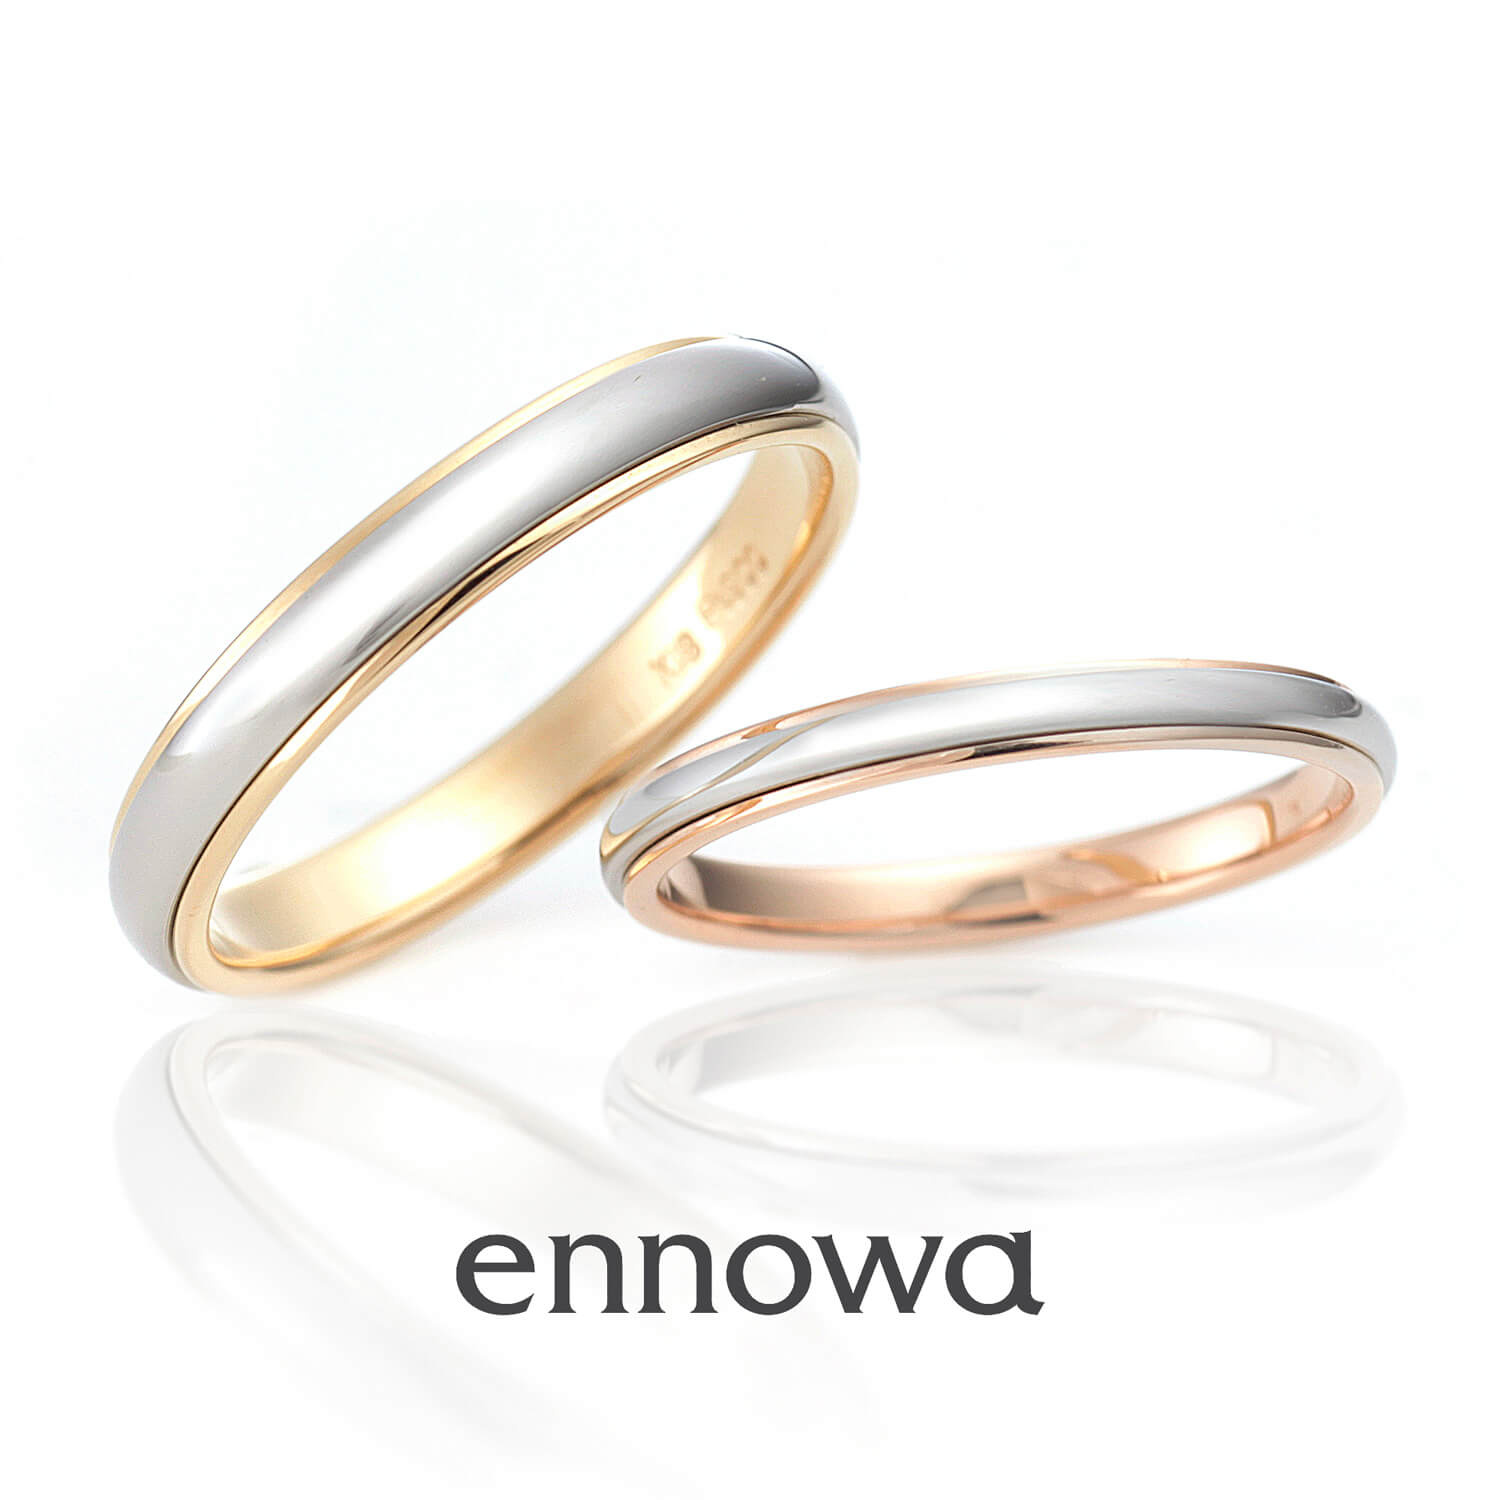 ennowaエンノワの結婚指輪AINOWAアイノワ